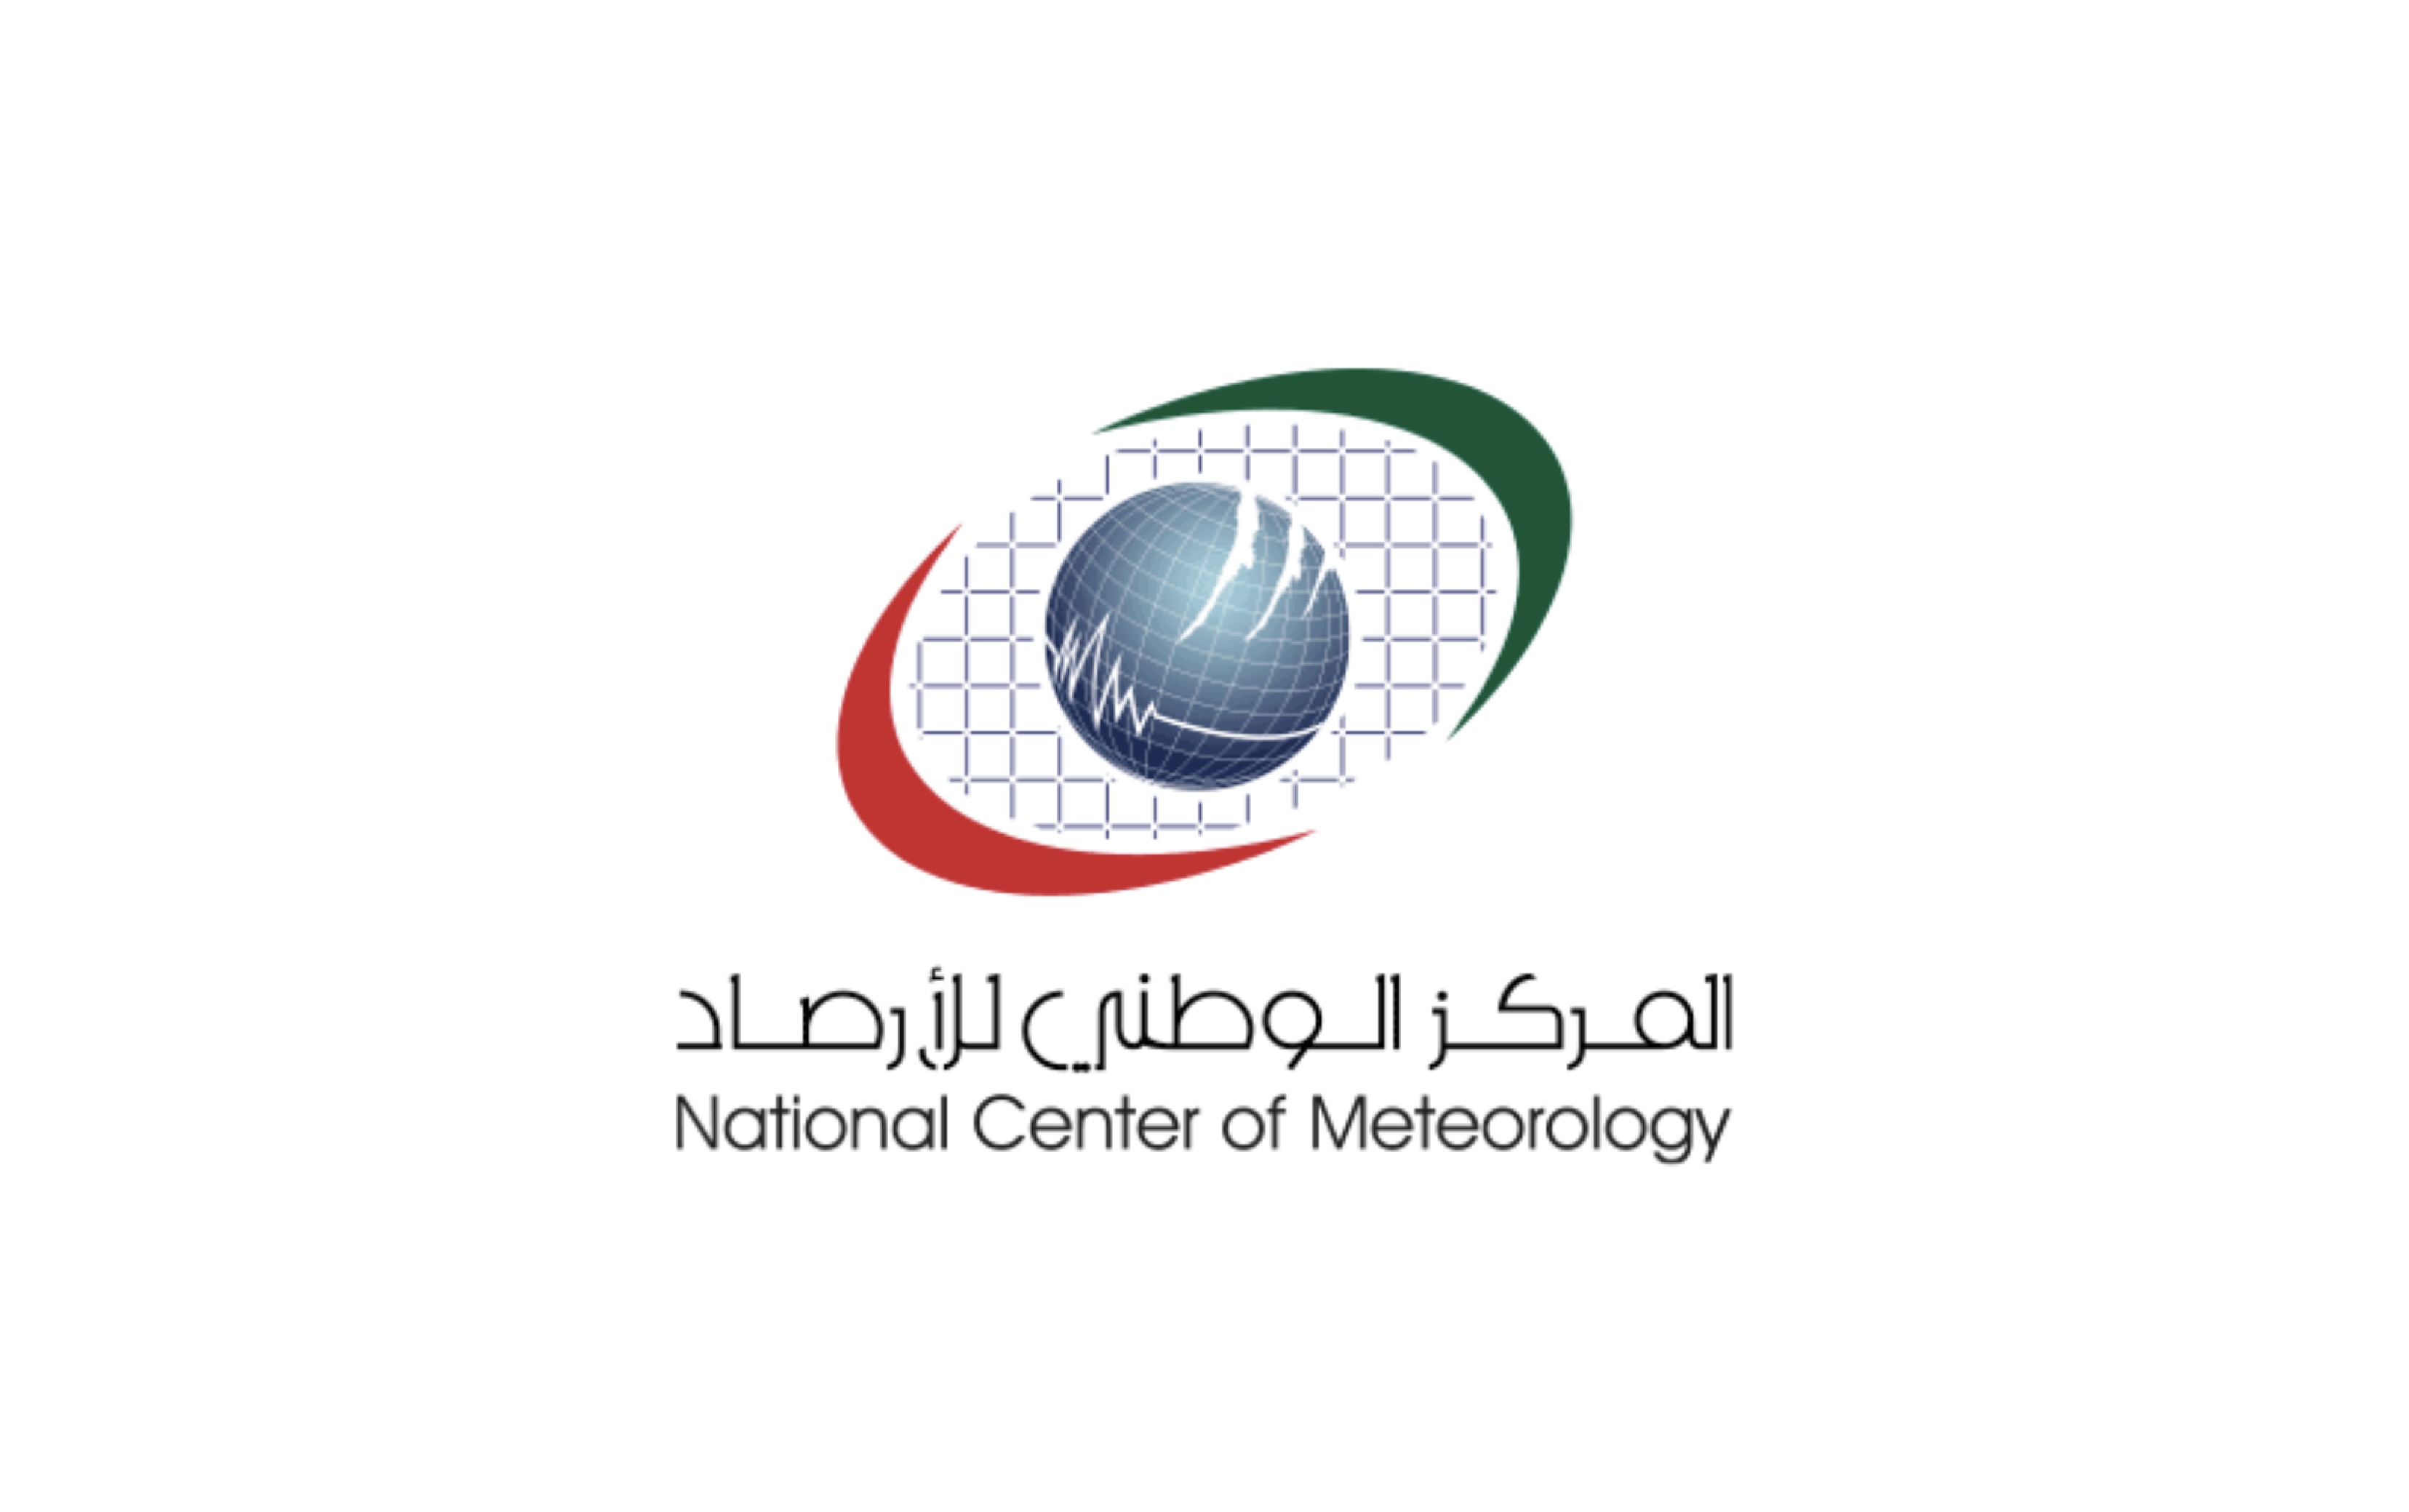 زلزال بقوة 6.1 درجة – ريختر في بحر العرب 